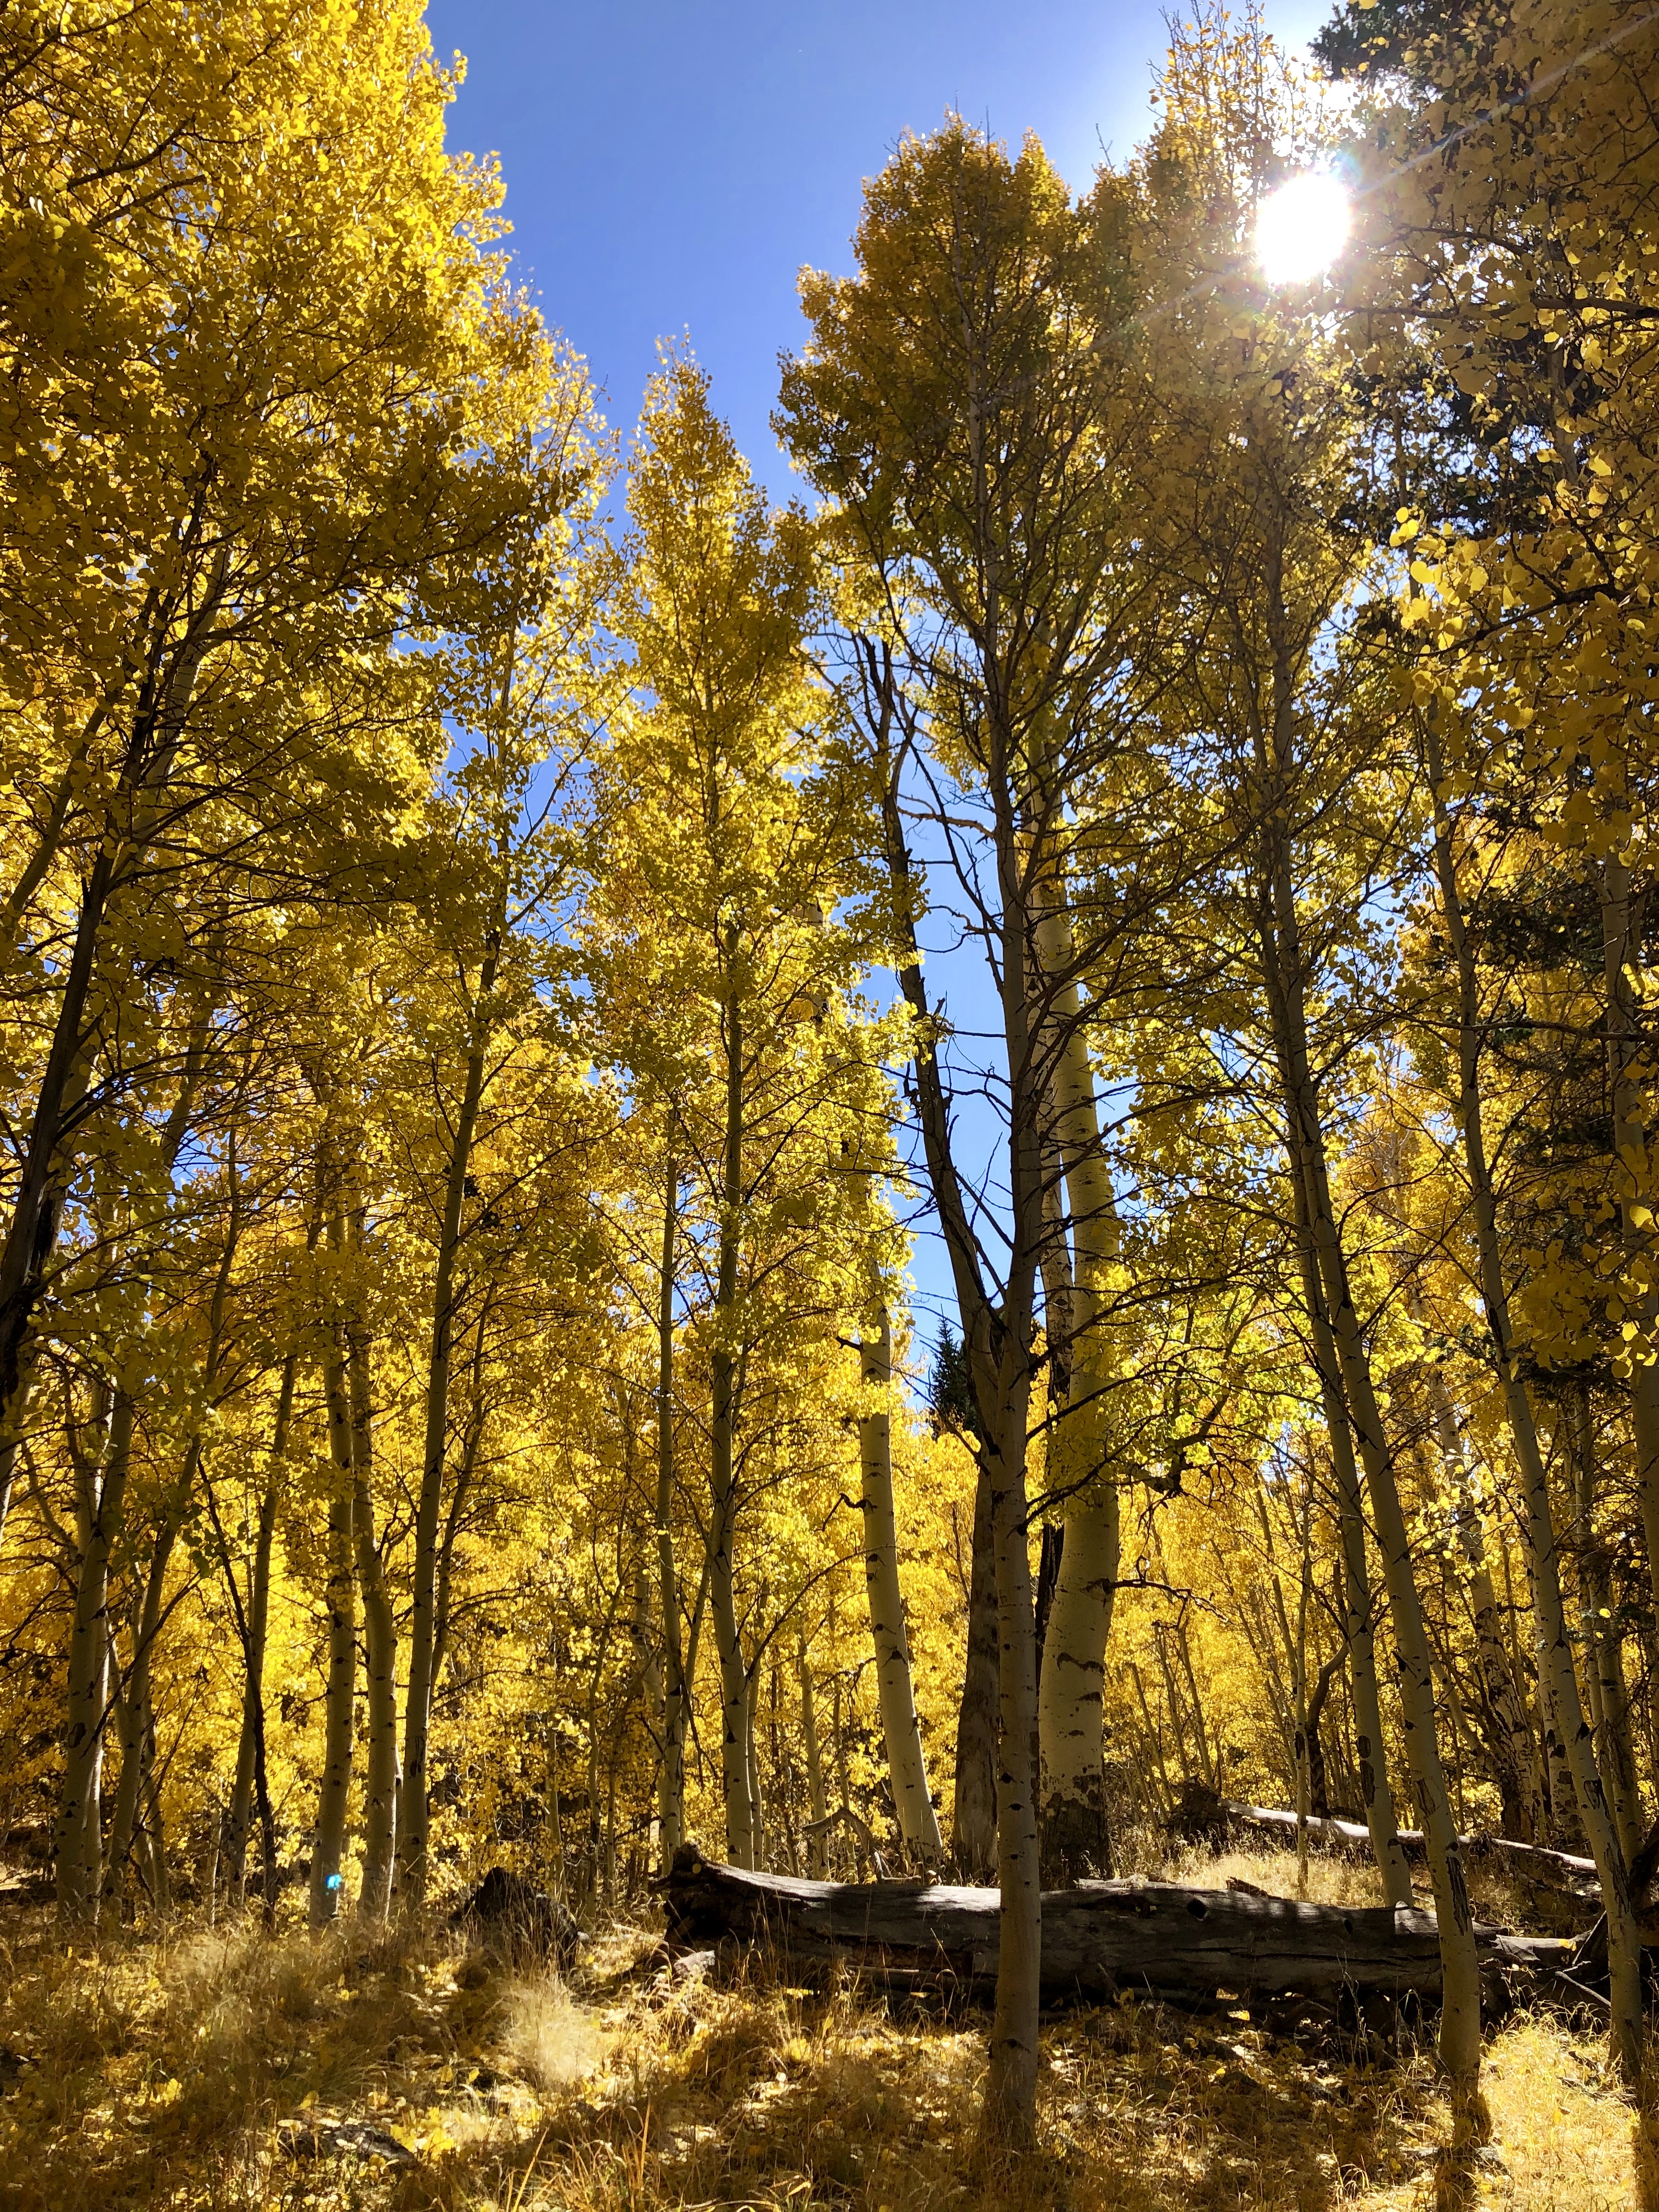 アリゾナでも楽しめる秋の紅葉 フラッグスタッフのアスペン ネイチャー ループ トレイル Aspen Nature Loop Trail アリゾナ